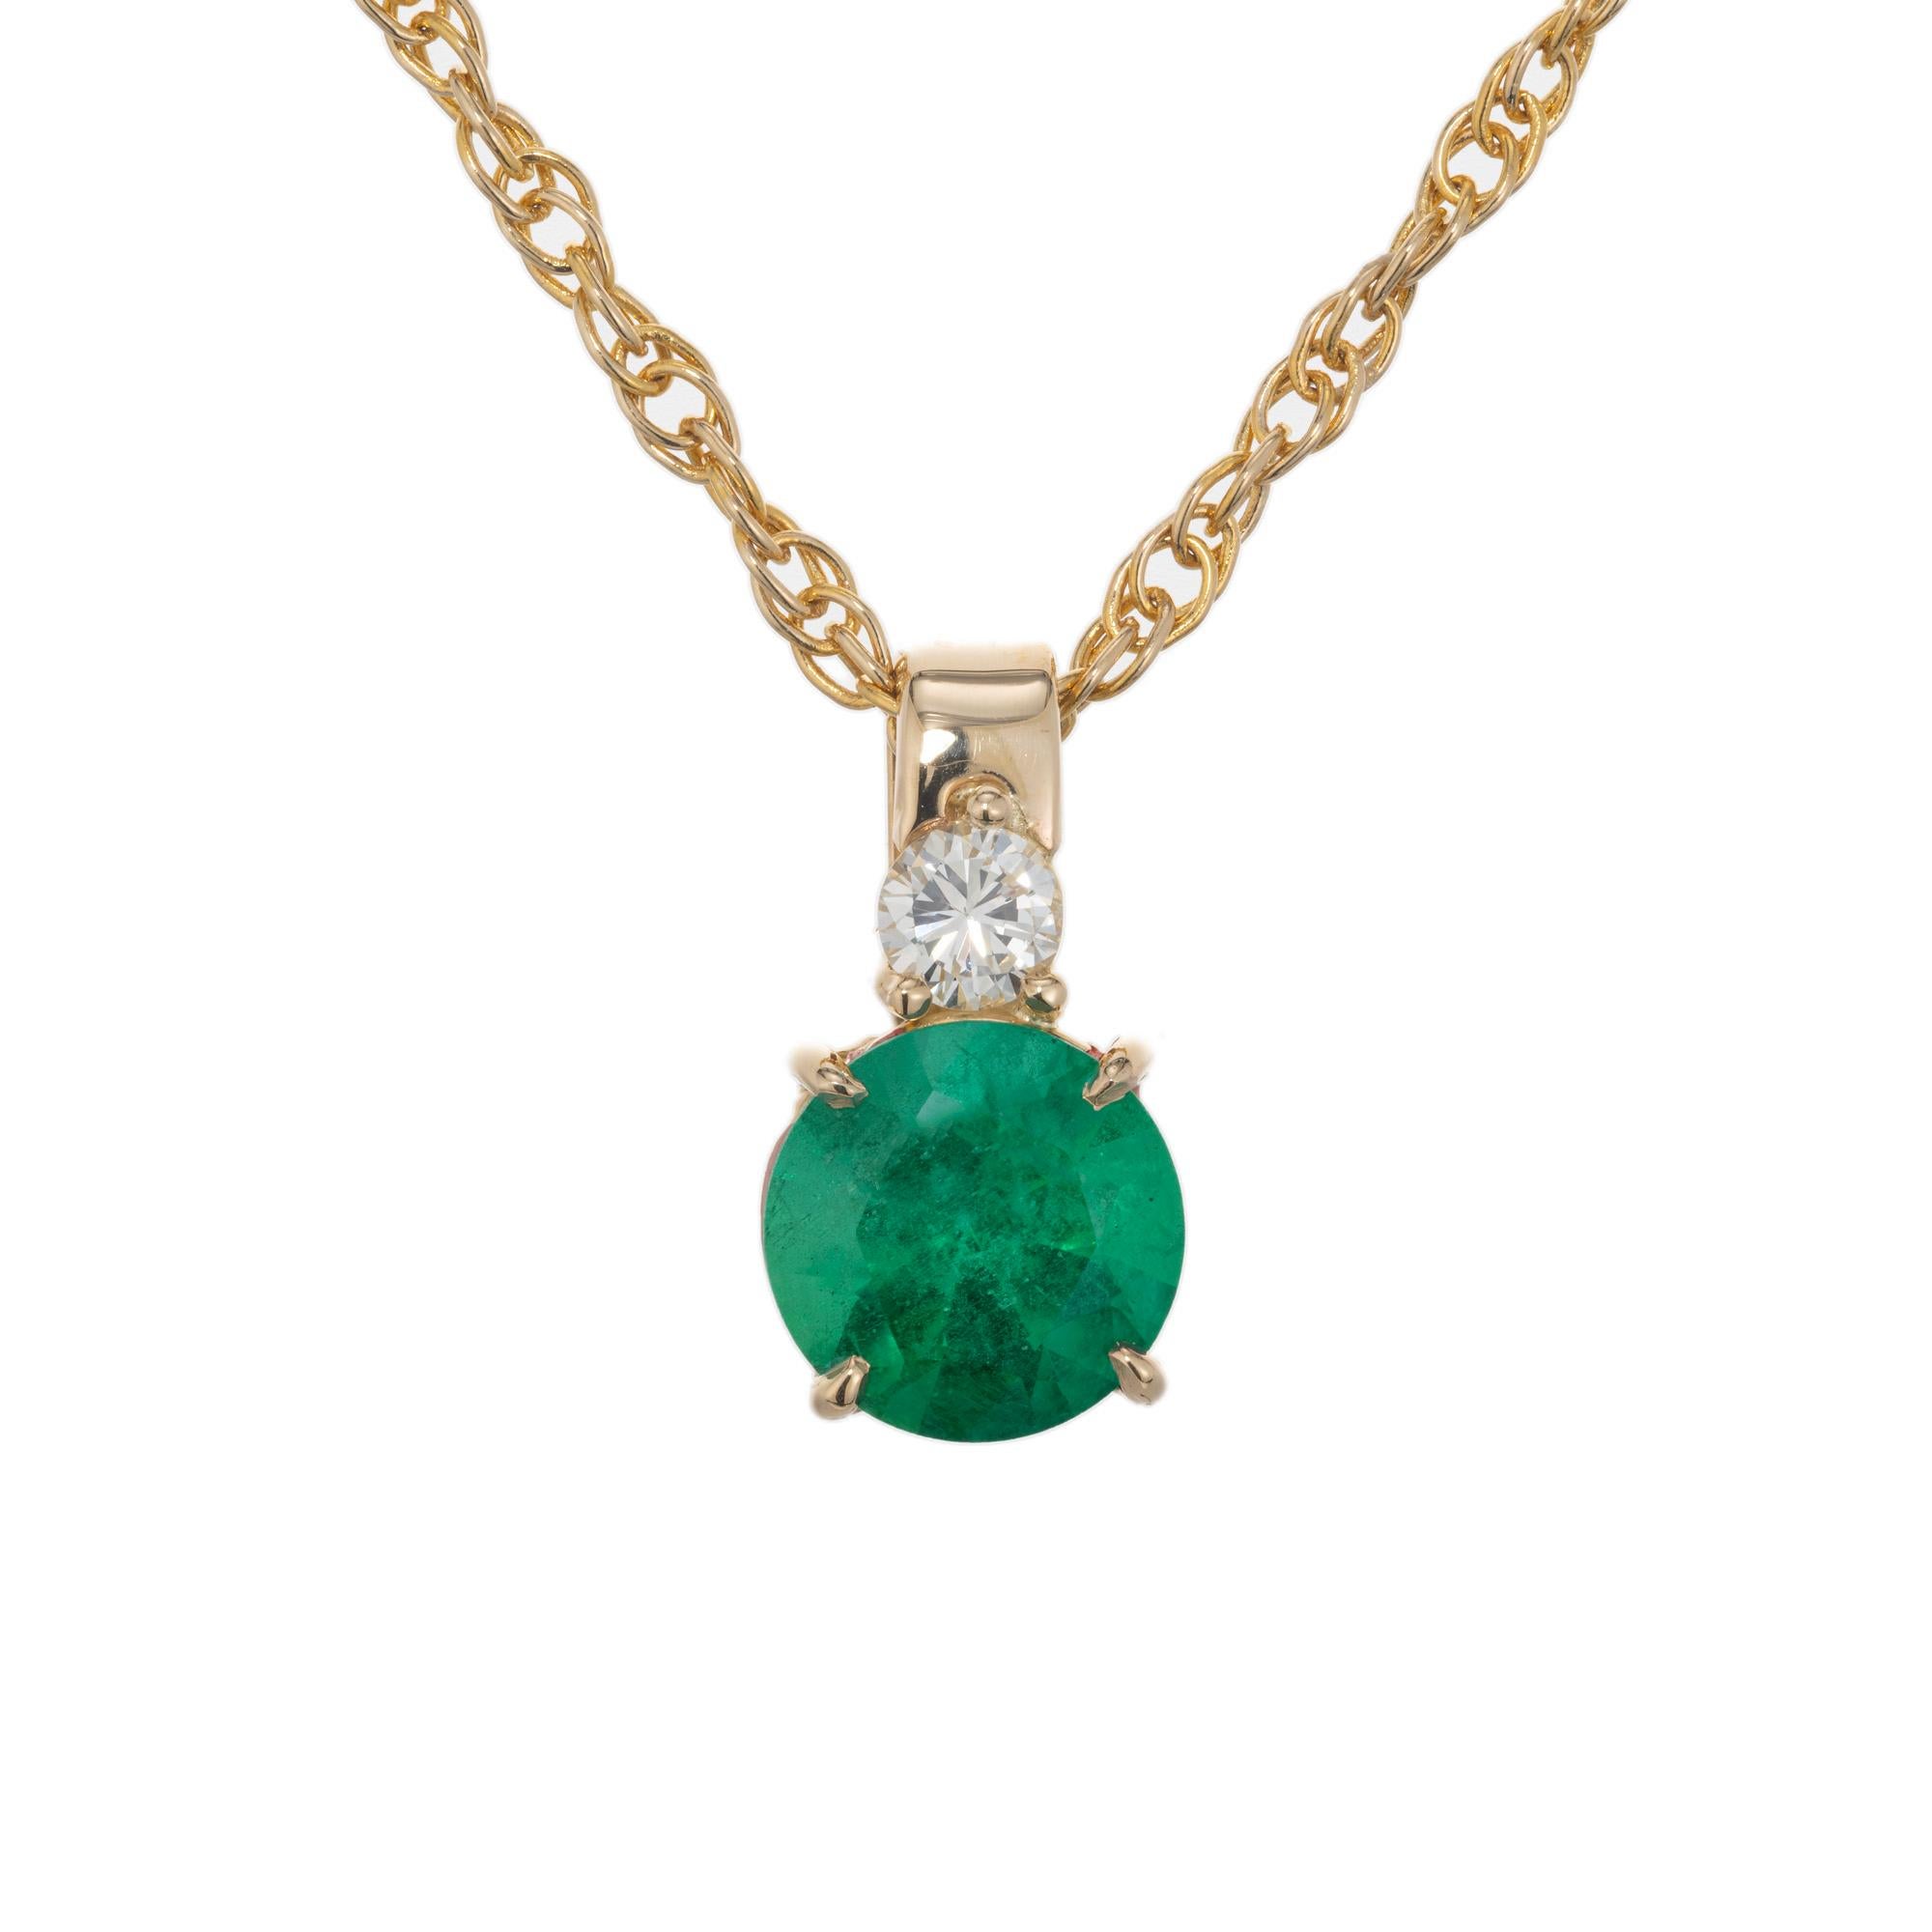 Halskette mit Smaragd- und Diamantanhänger. GIA-zertifizierter runder Smaragd von 1,08 Karat in einer vierzackigen Fassung aus 14 Karat Gelbgold, akzentuiert mit einem runden Diamanten, der auf dem Smaragd auf dem Bügel sitzt. GIA hat es als